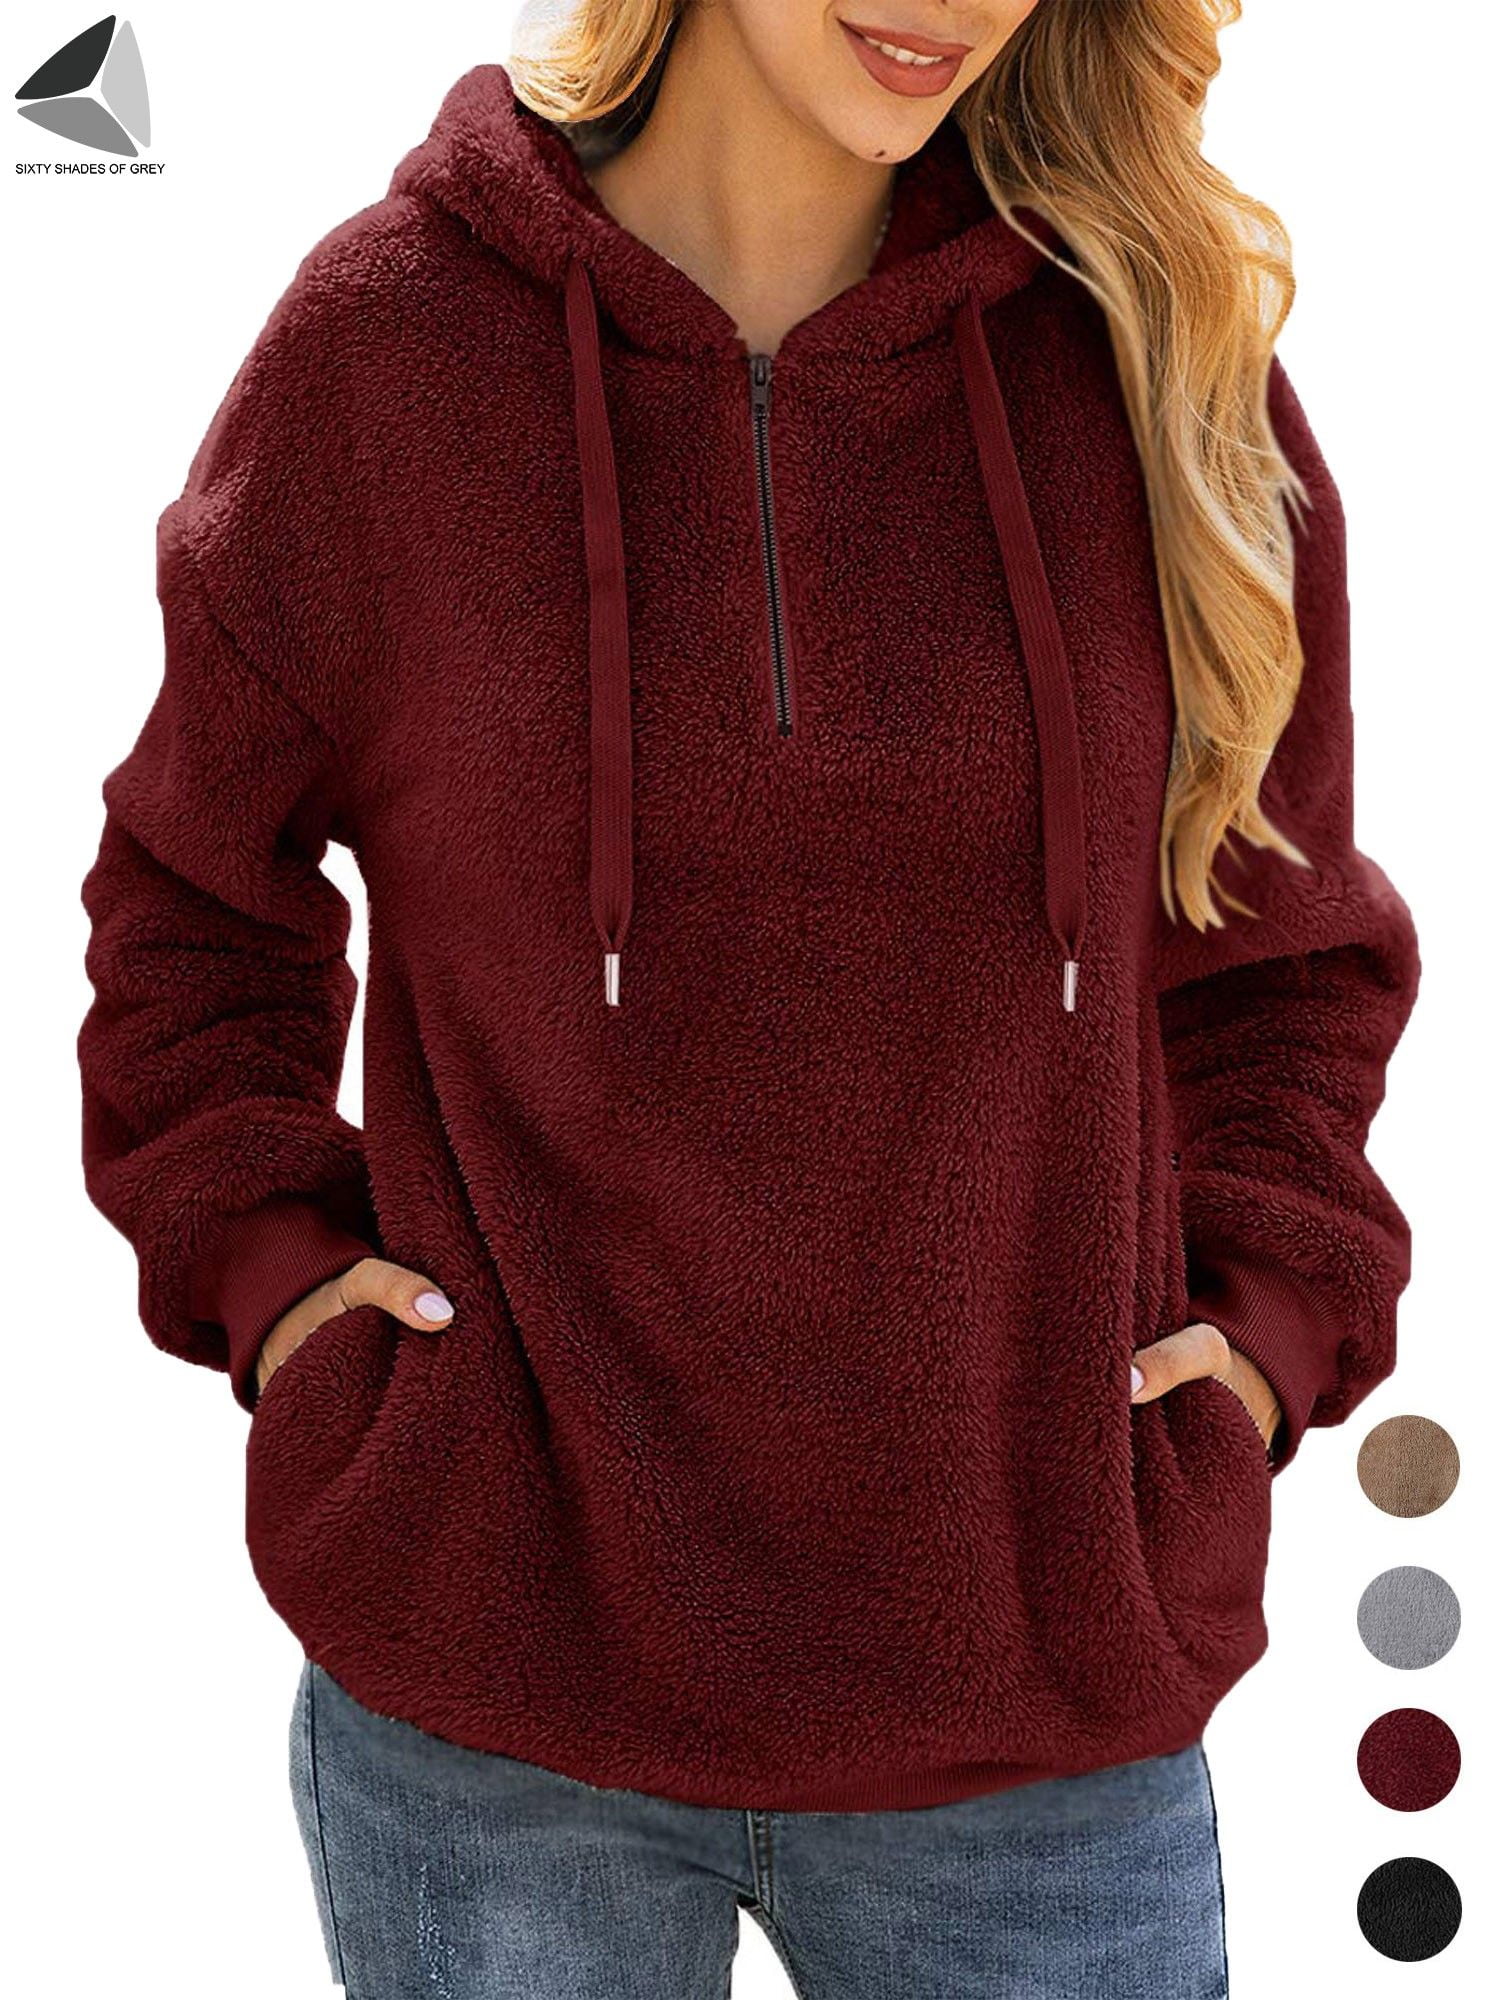 Rambling New Women Long Sleeve Oversized Color Block Sherpa Fleece Sweatshirt Pullover Top Outwear with Pockets